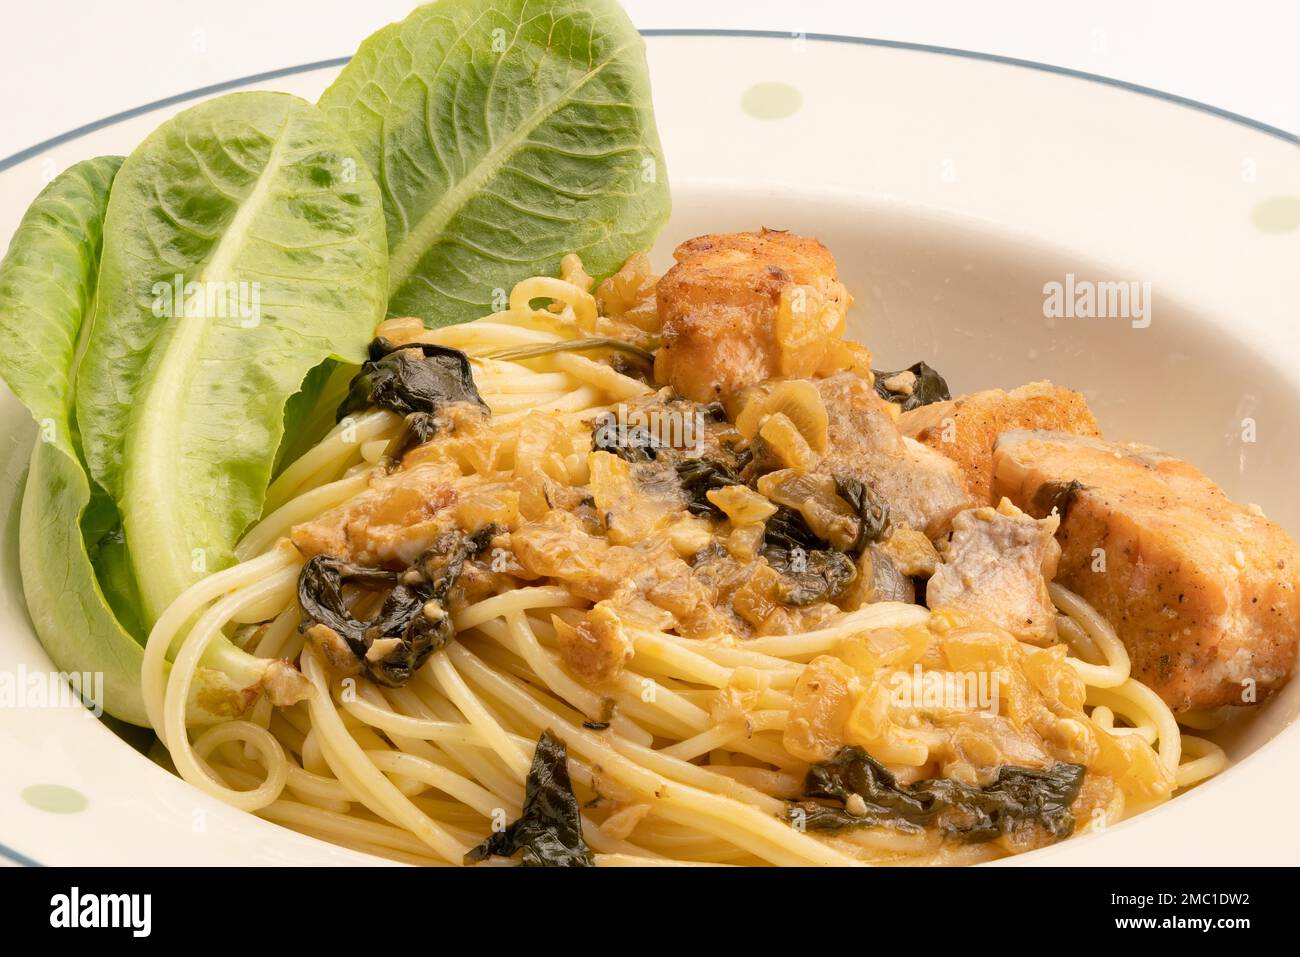 Vista de cerca de la cocina italiana, espaguetis cremosos caseros con espinacas, salmón y verduras verdes en plato de cerámica blanca sobre fondo blanco Foto de stock